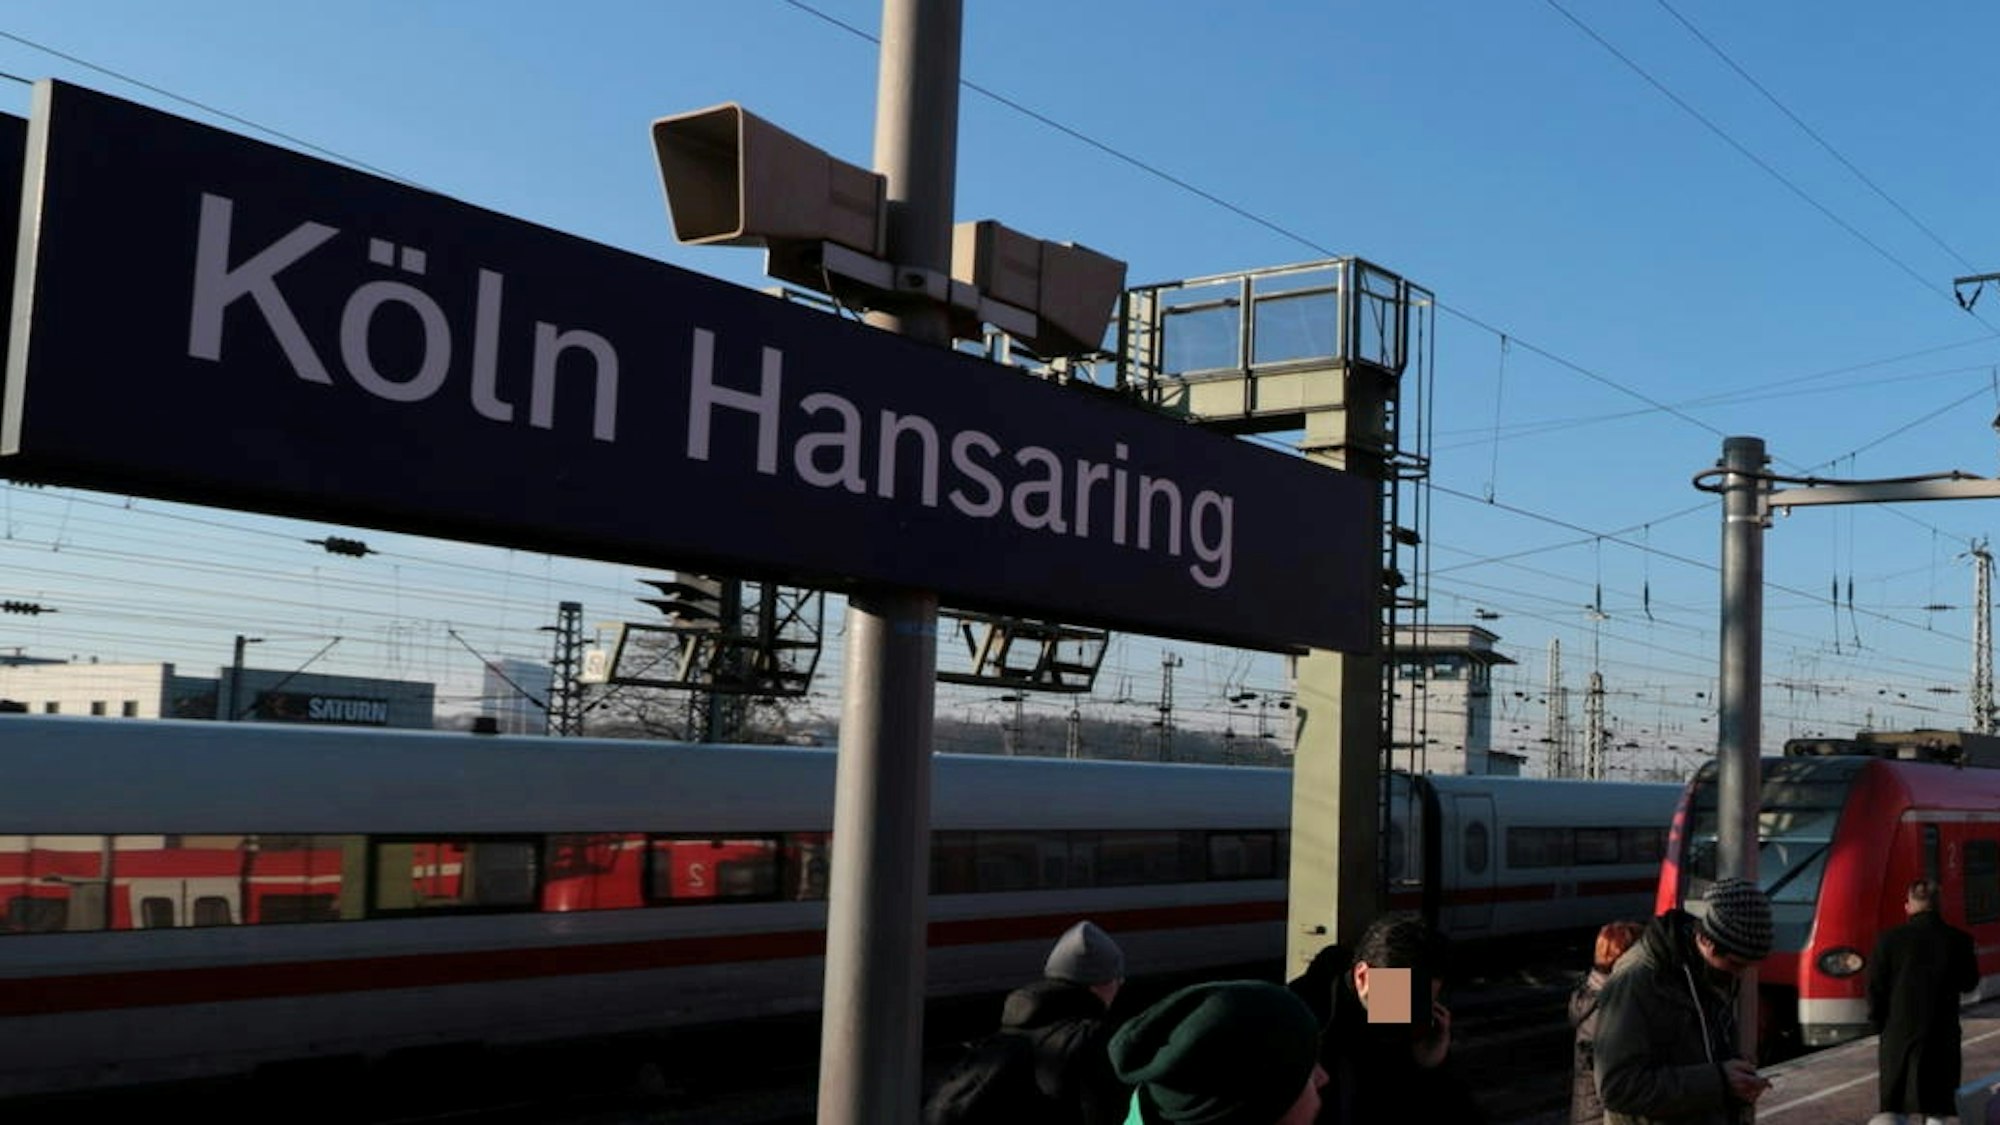 An der Haltestelle Köln Hansaring warten Menschen auf die Bahn.